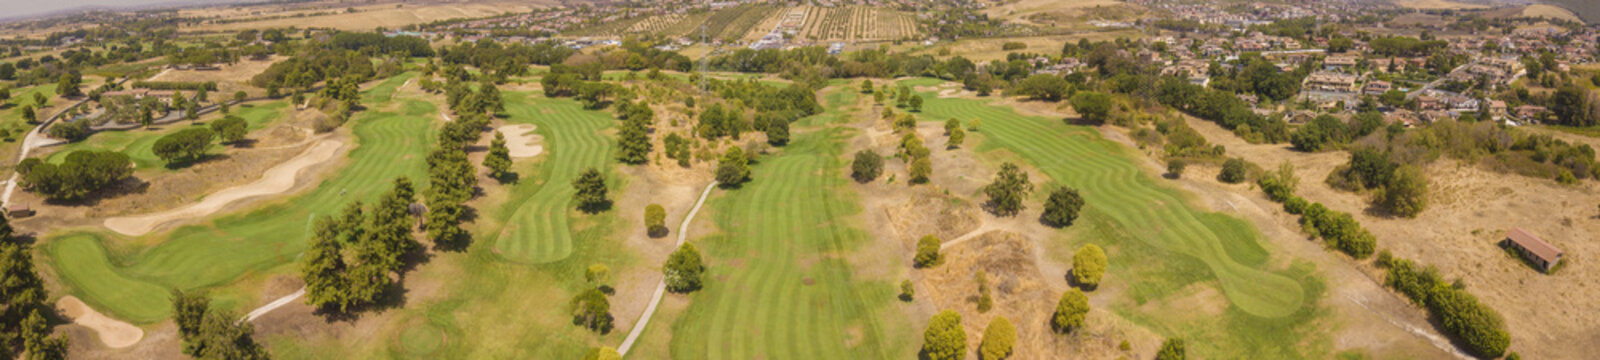 Ampia vista aerea panoramica su un circolo da golf molto grande e ricco di verde. Ci sono ostacoli sabbiosi e alberi in modo da complicare il gioco agli sportivi.